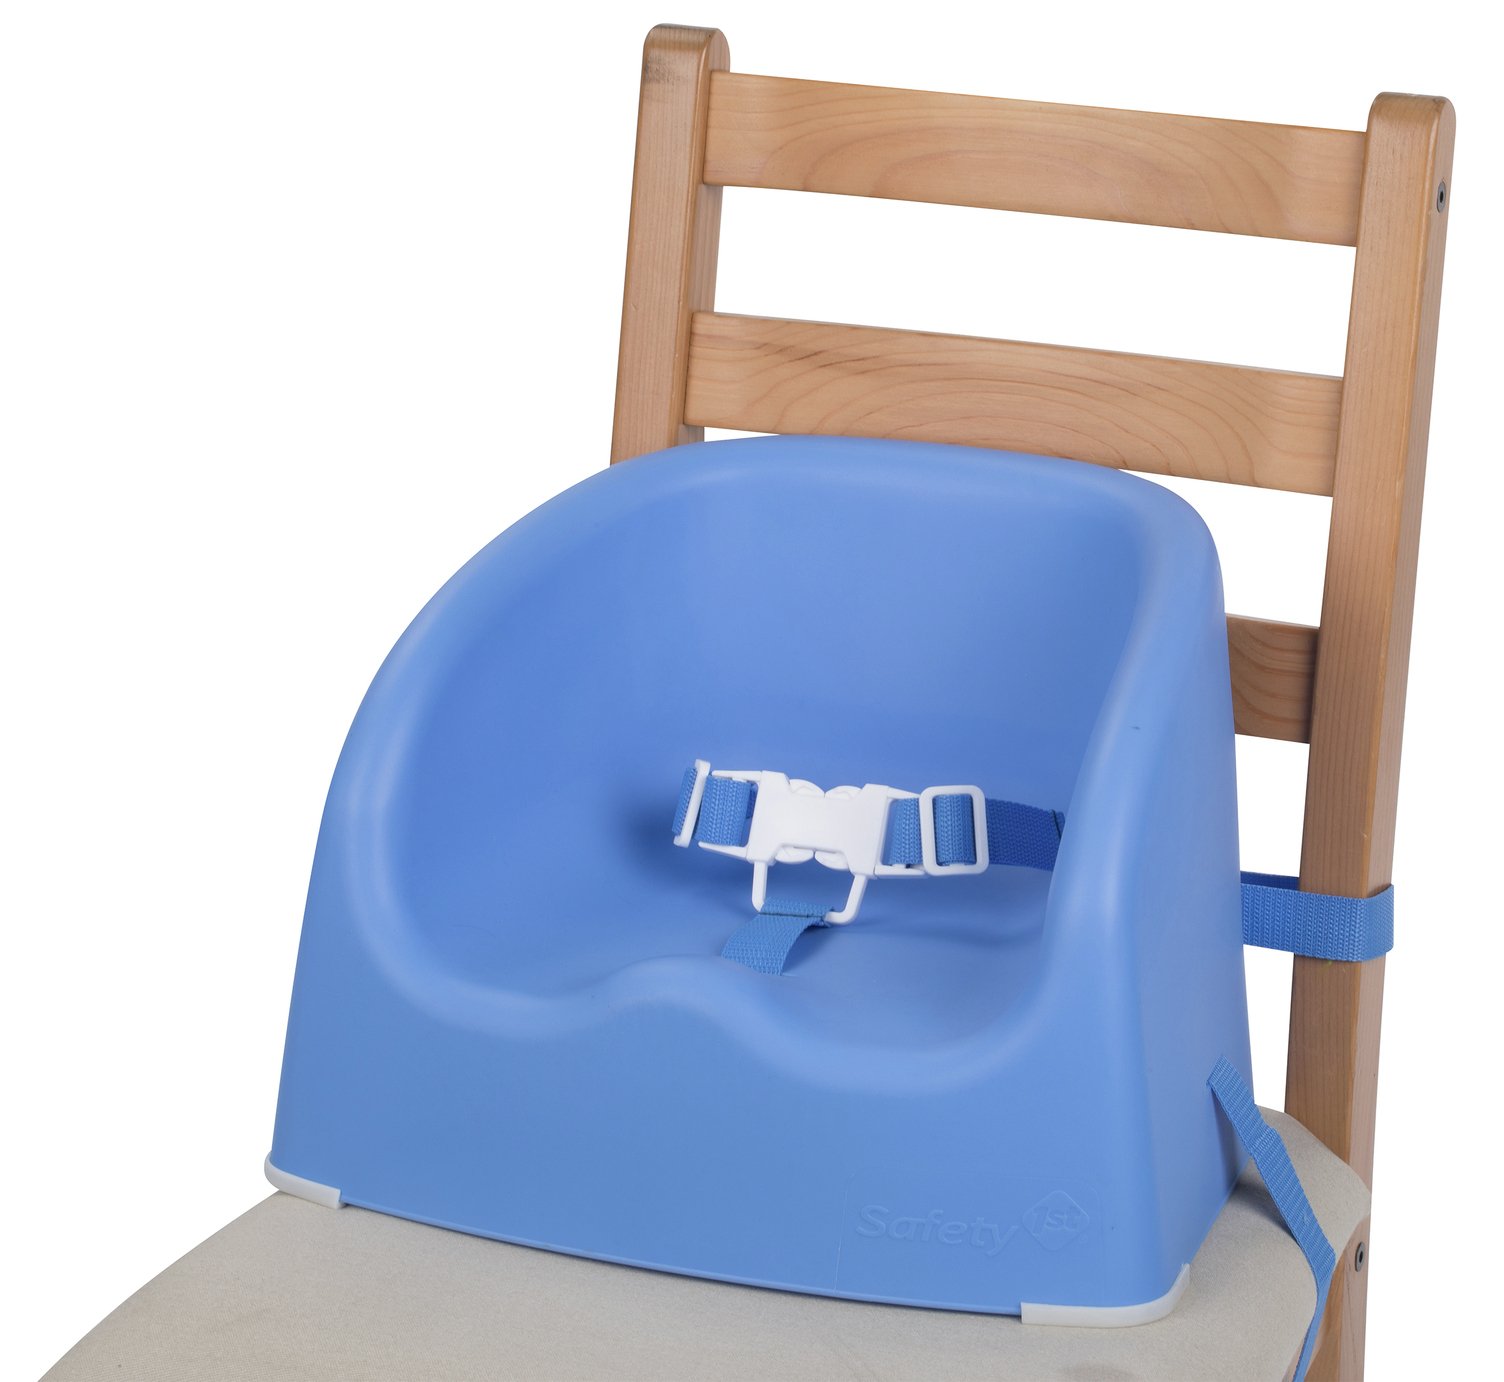 chair booster seat argos